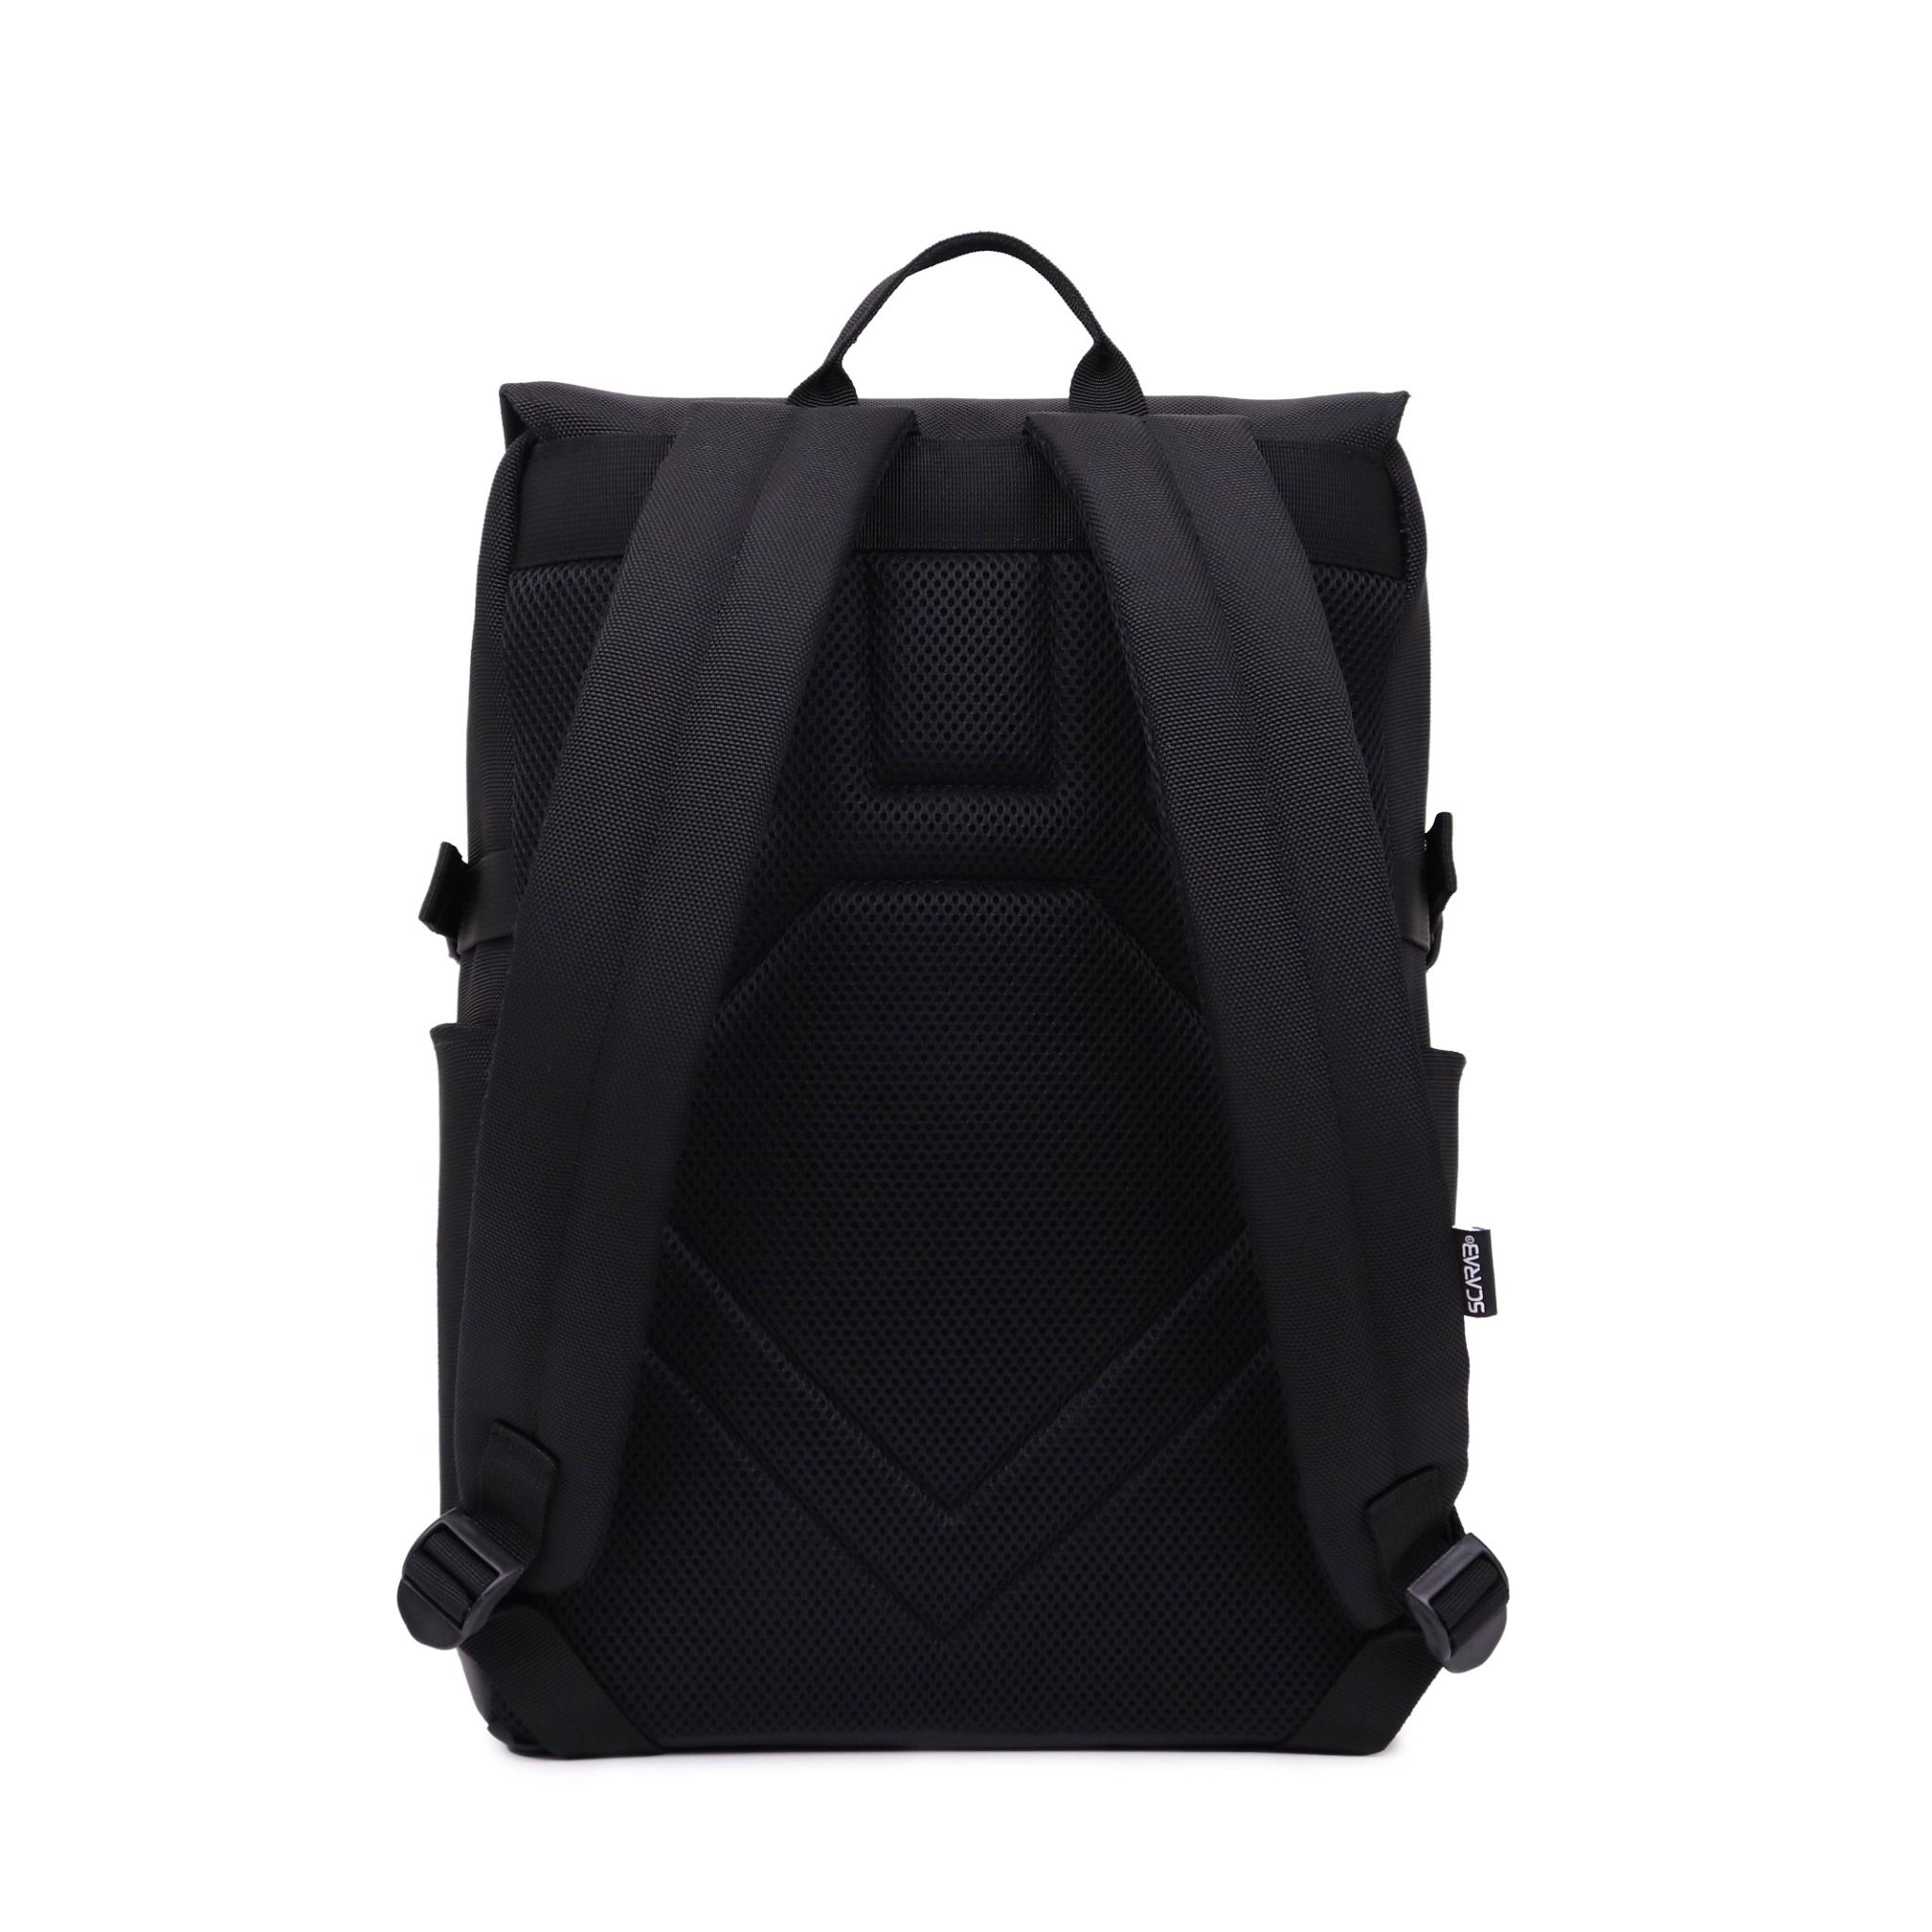  Urban Fabric Backpack - Black 